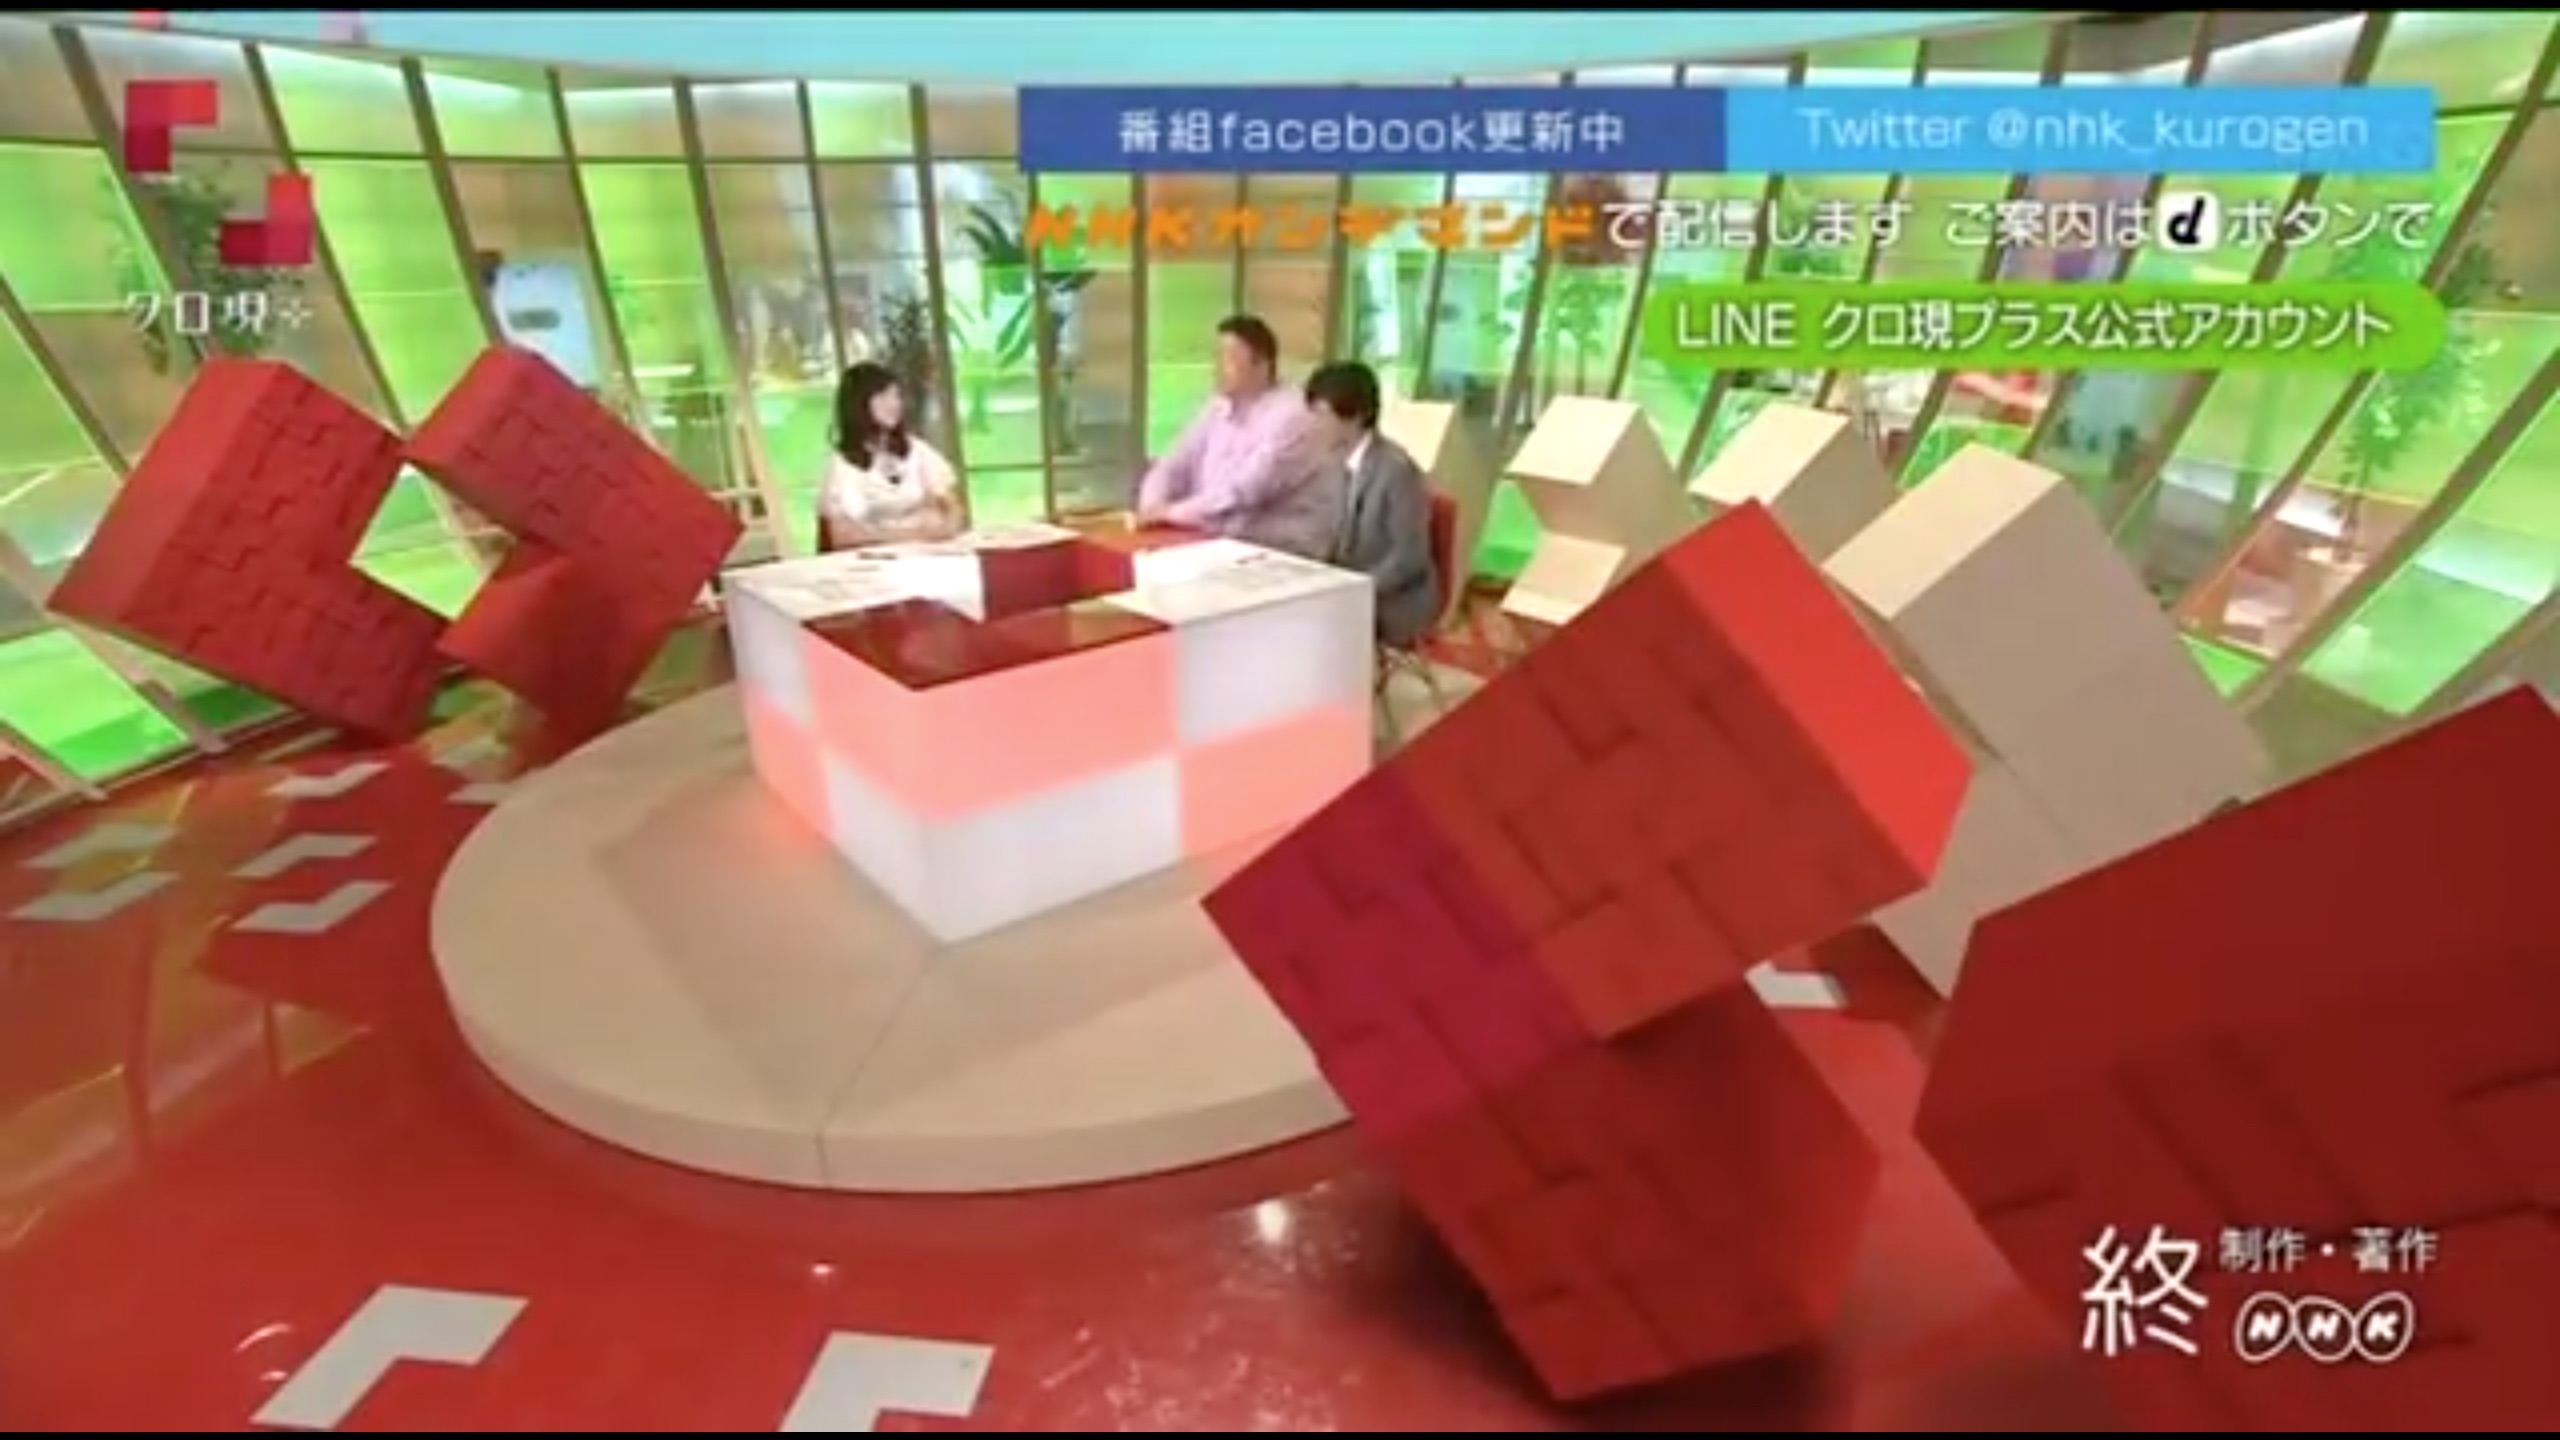 アップ 現代 クローズ NHKが「クローズアップ現代」の終了を決定(立岩陽一郎)